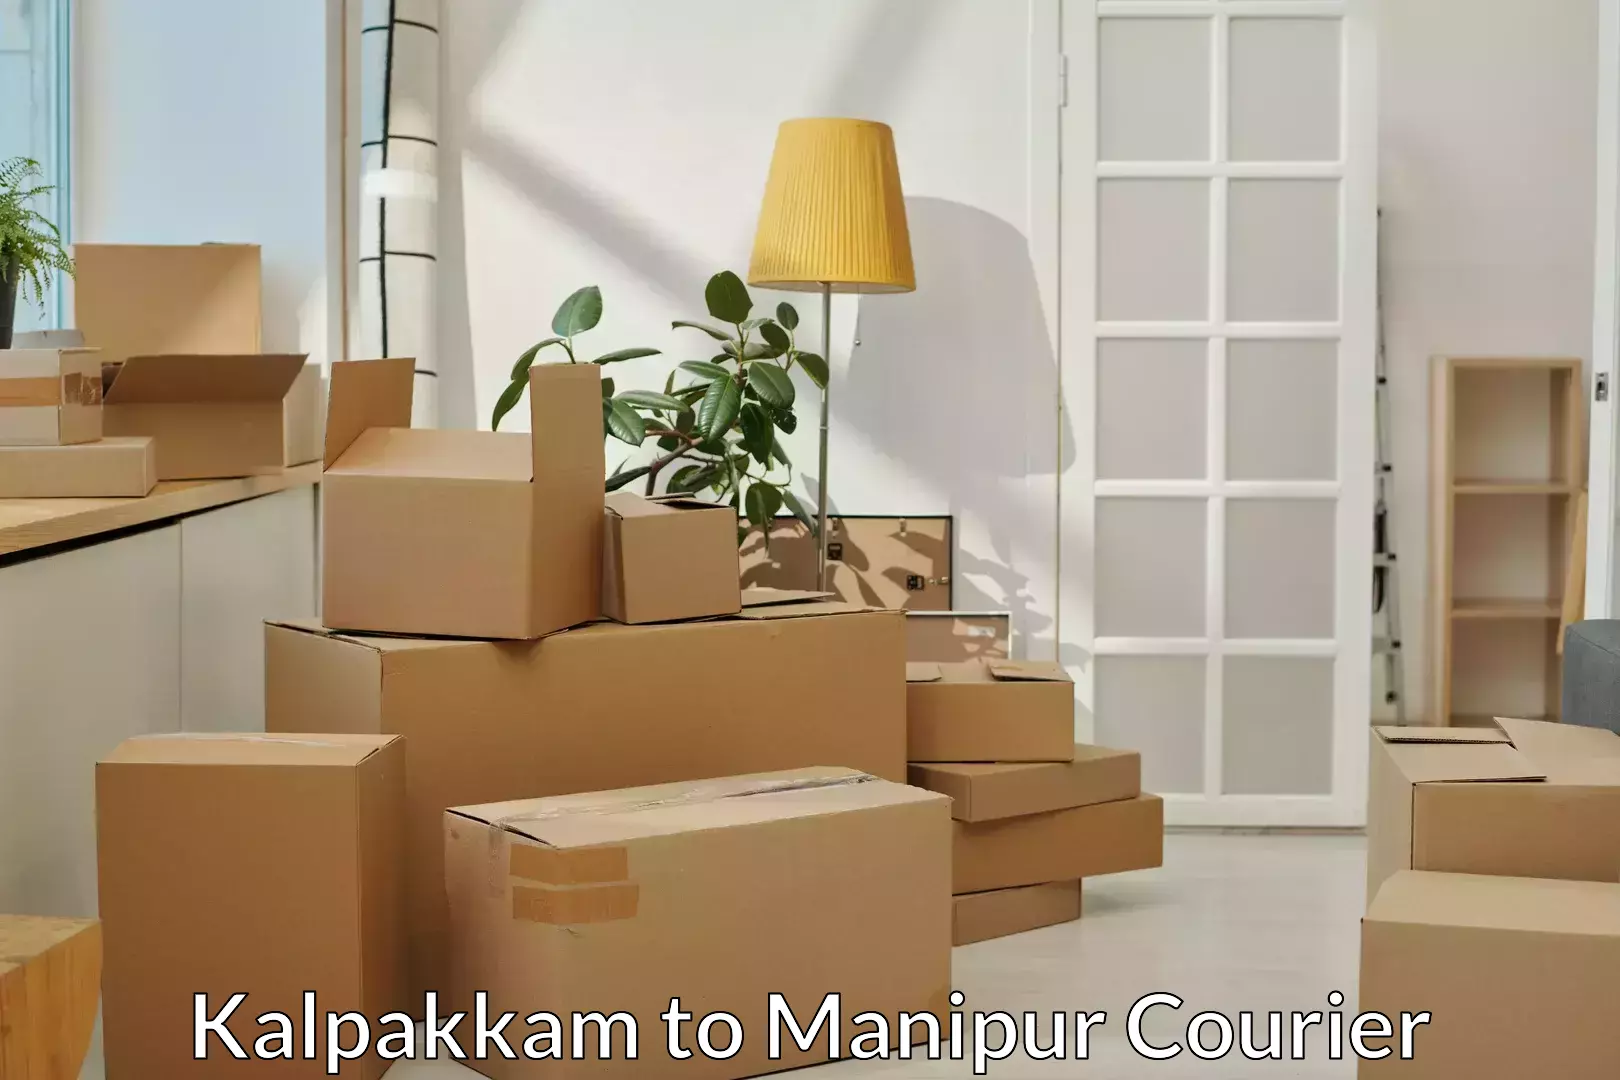 Stress-free household shifting in Kalpakkam to Manipur